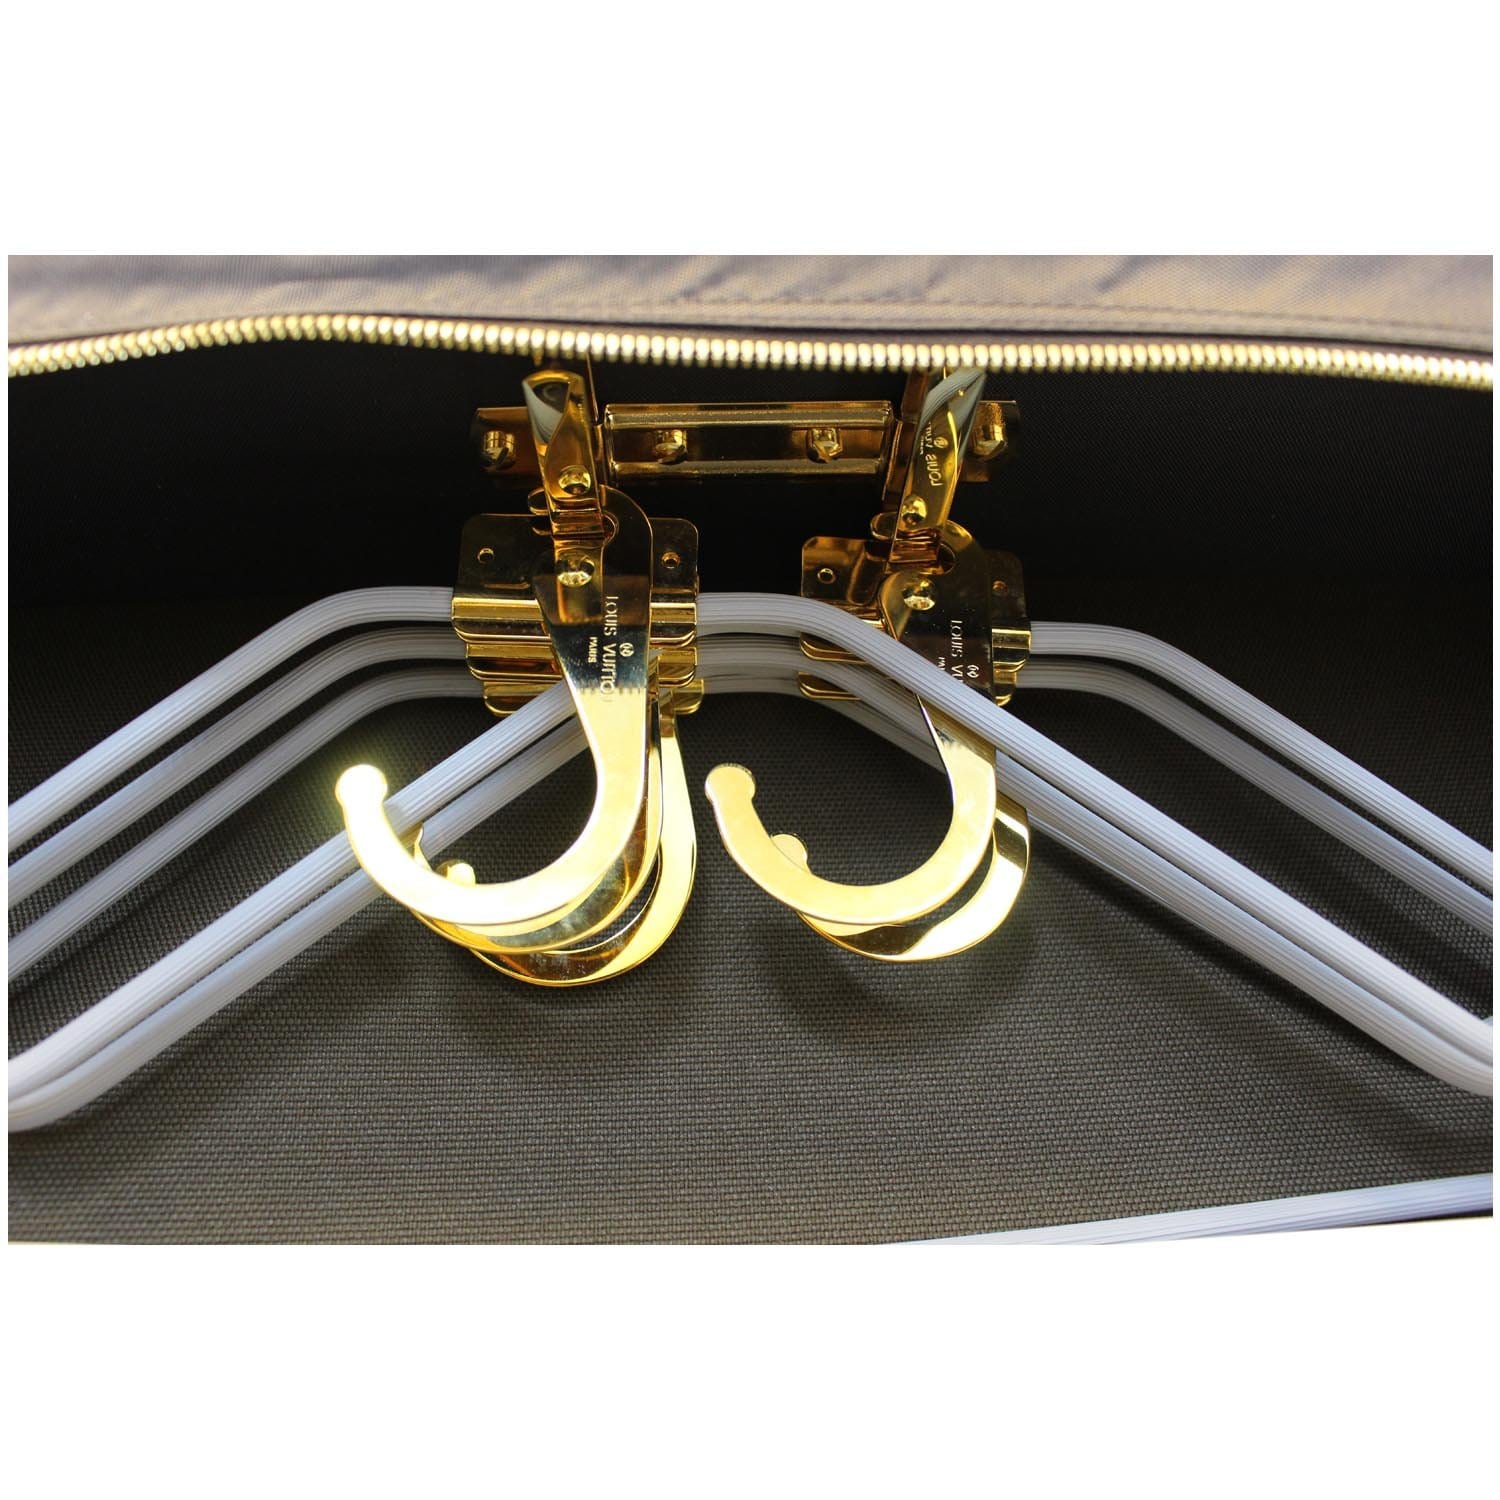 Louis Vuitton Clothes-hangers 357415